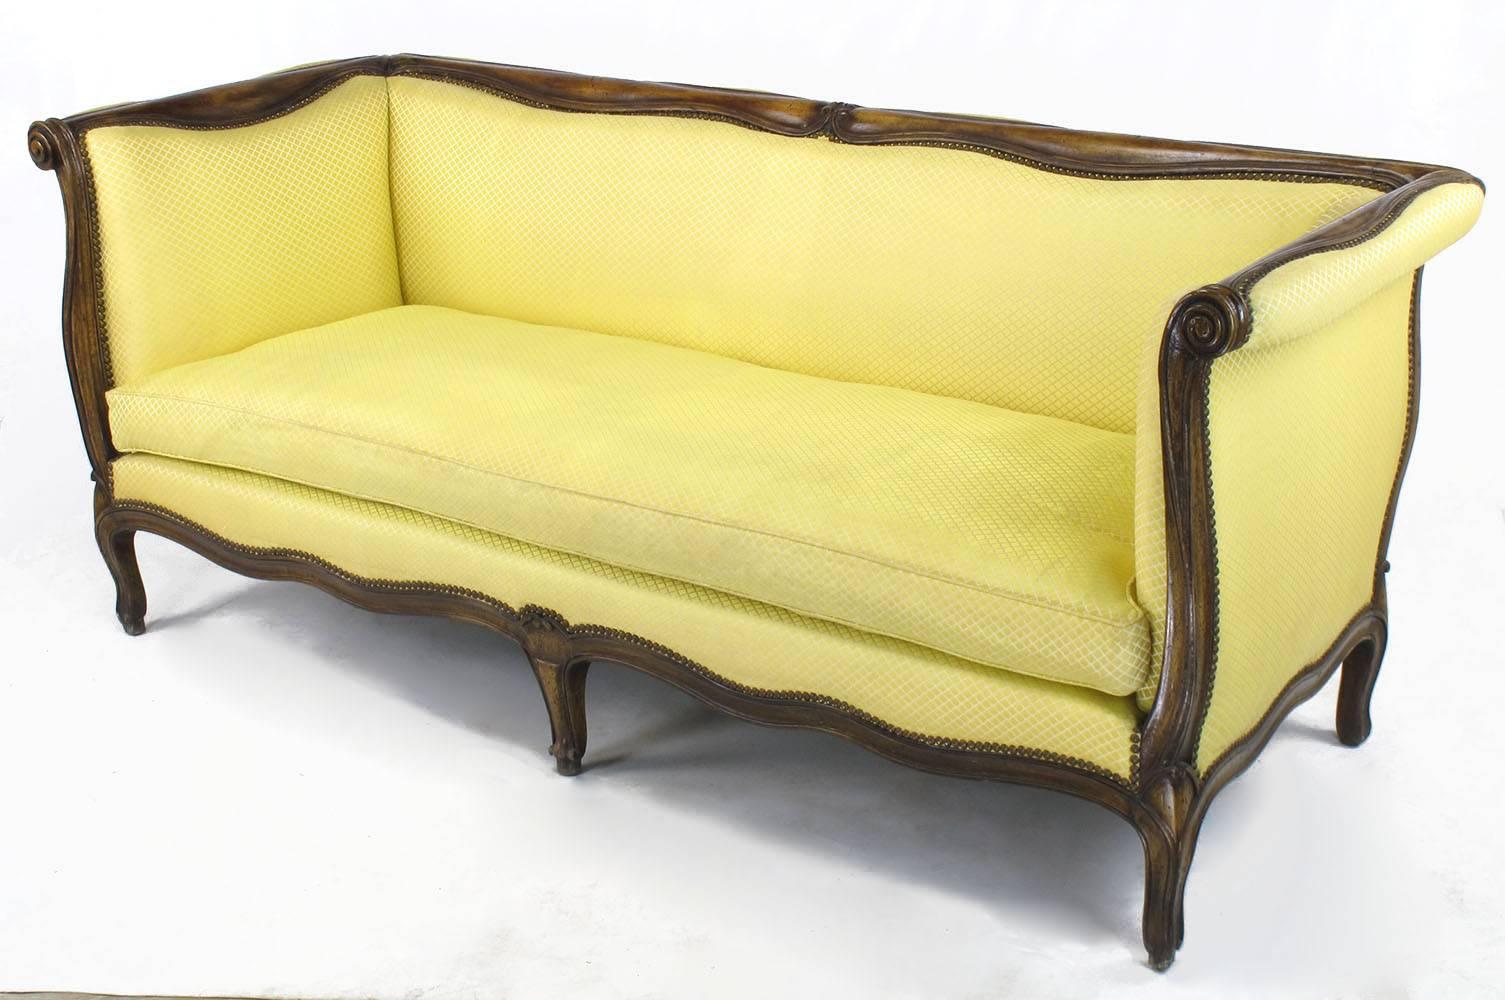 Yale Burge, reproduction de haute qualité d'un canapé à bras pairs de style Louis XV. Cadre en hêtre sculpté à la main, noyer vieilli et teinté, avec un coussin à assise simple rempli de duvet. Tapissé d'une soie jaune hachurée en bon état, à